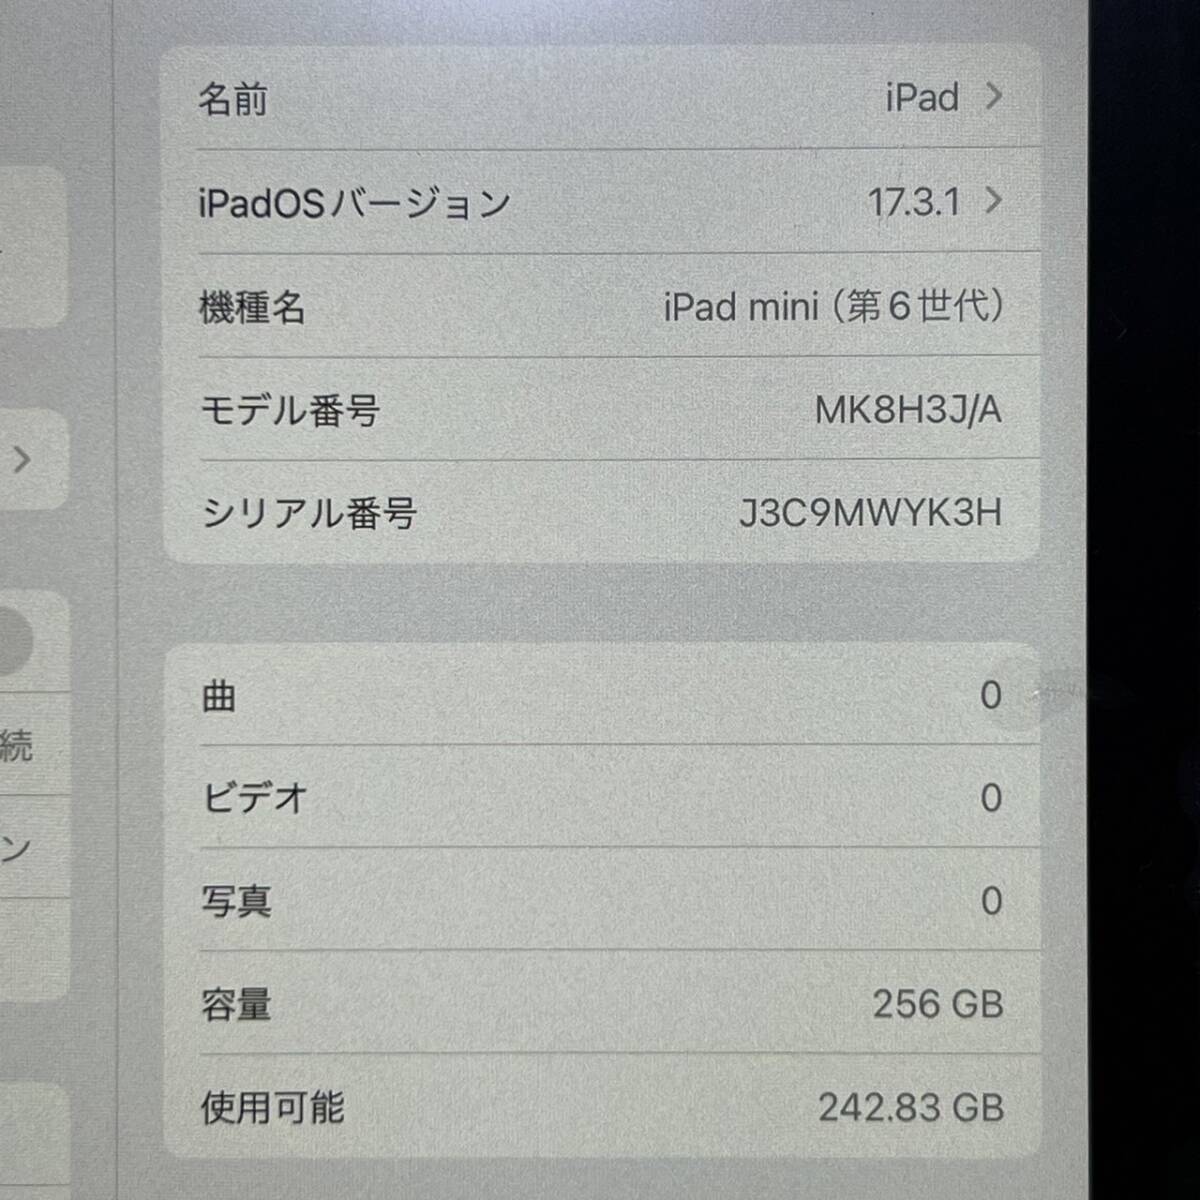 1 иен ~[ первый период . завершено ]Apple iPad mini no. 6 поколение 8.3 дюймовый Liquid Retina дисплей Wi-Fi + Cellular модель Star свет MK8H3JA 256GB